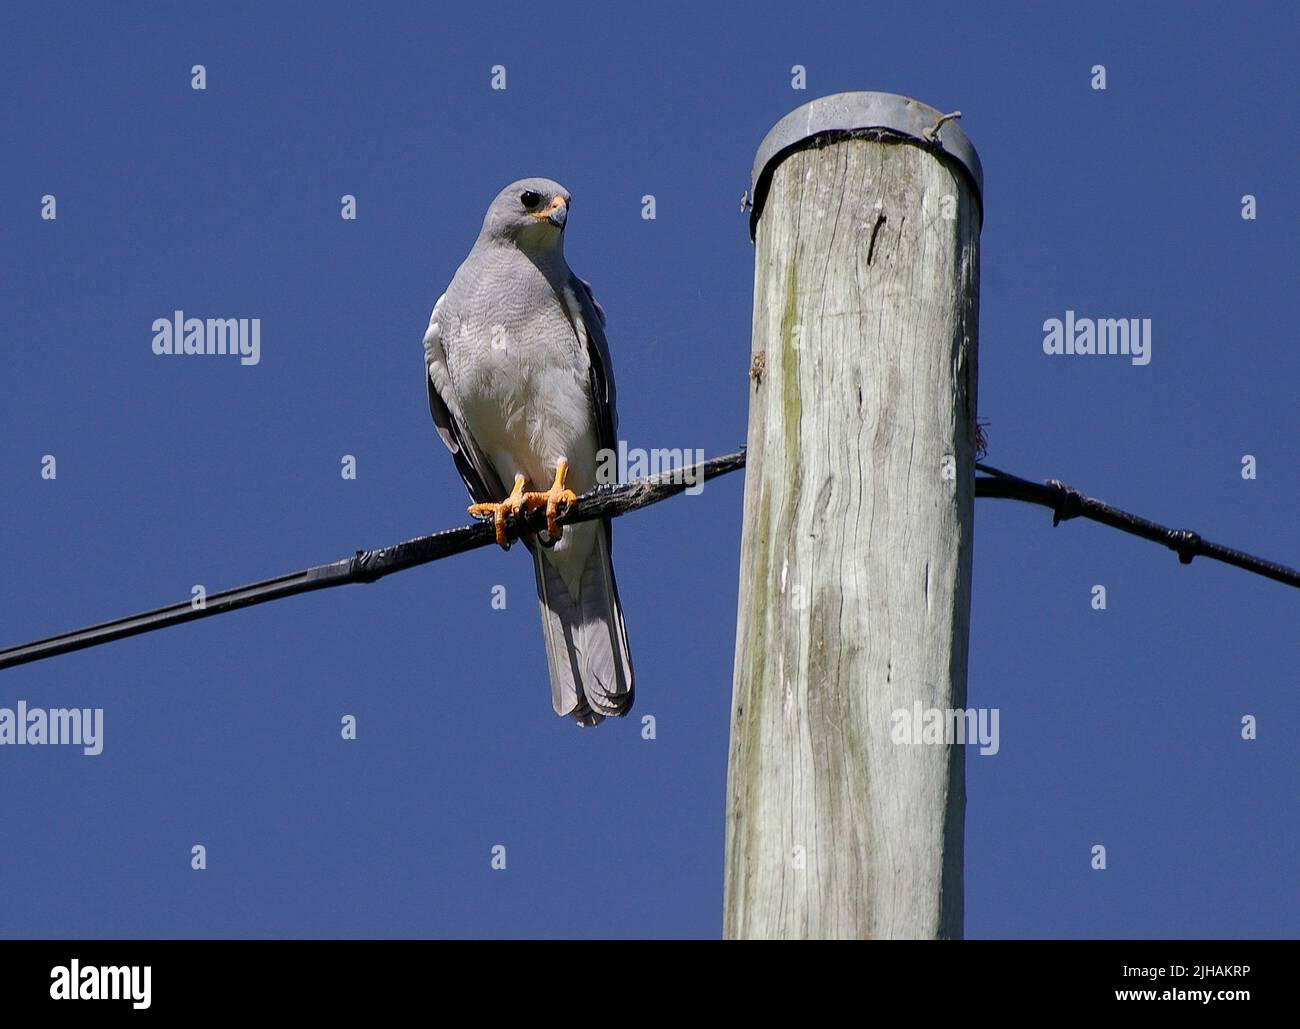 Le Goshawk gris australien, Accipiter novaehollandiae, perché sur un câble électrique à côté de la perche, en regardant à droite. Tamborine Mountain, Queensland Banque D'Images